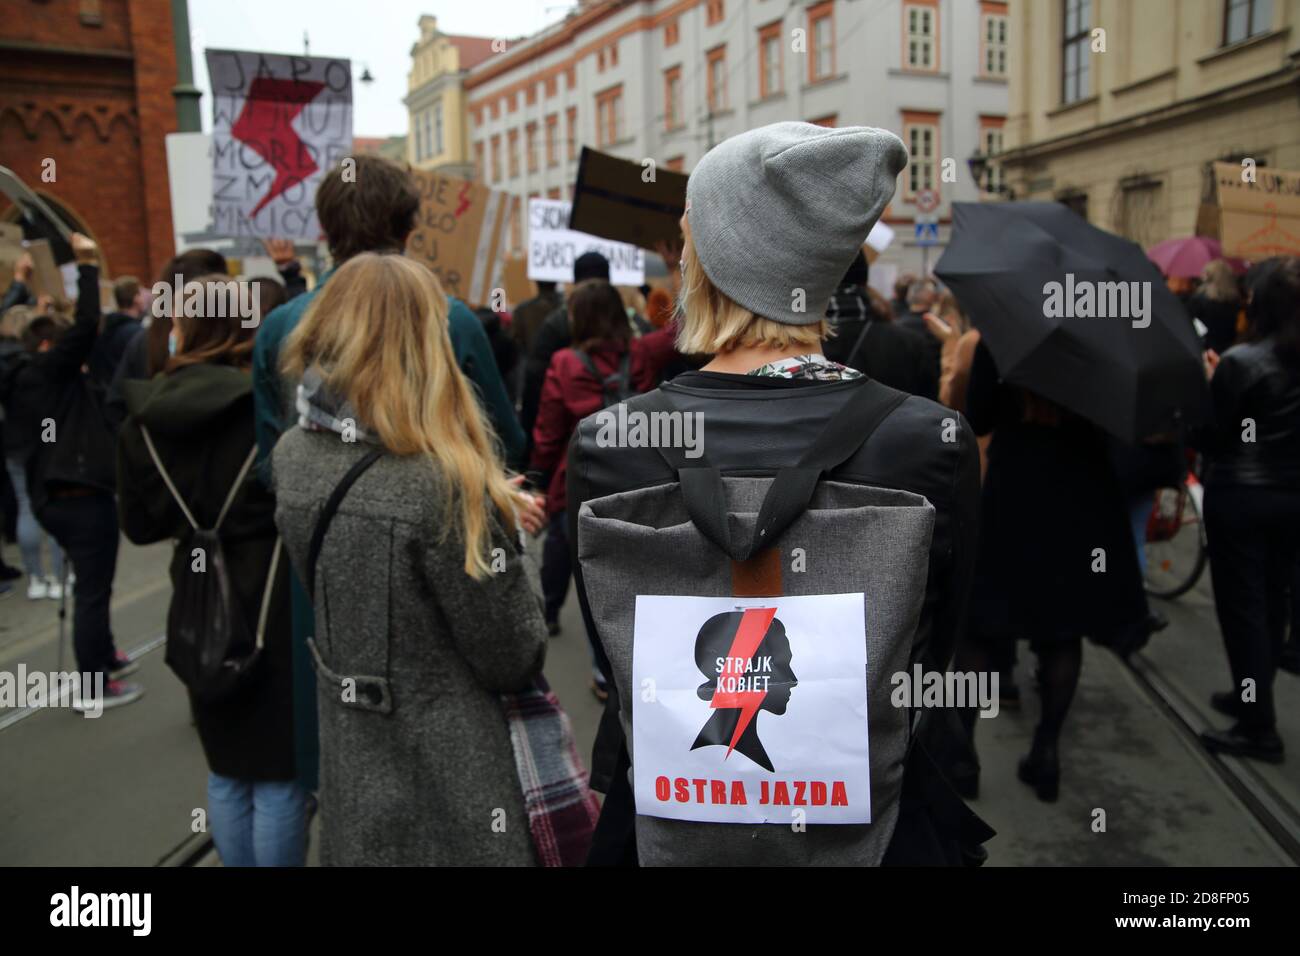 Krakau / Polen - oktober 25 2020: Regierungsfeindliche Demonstration nach Entscheidung des Verfassungsgerichts zum nahezu vollständigen Verbot der Abtreibung. Stockfoto